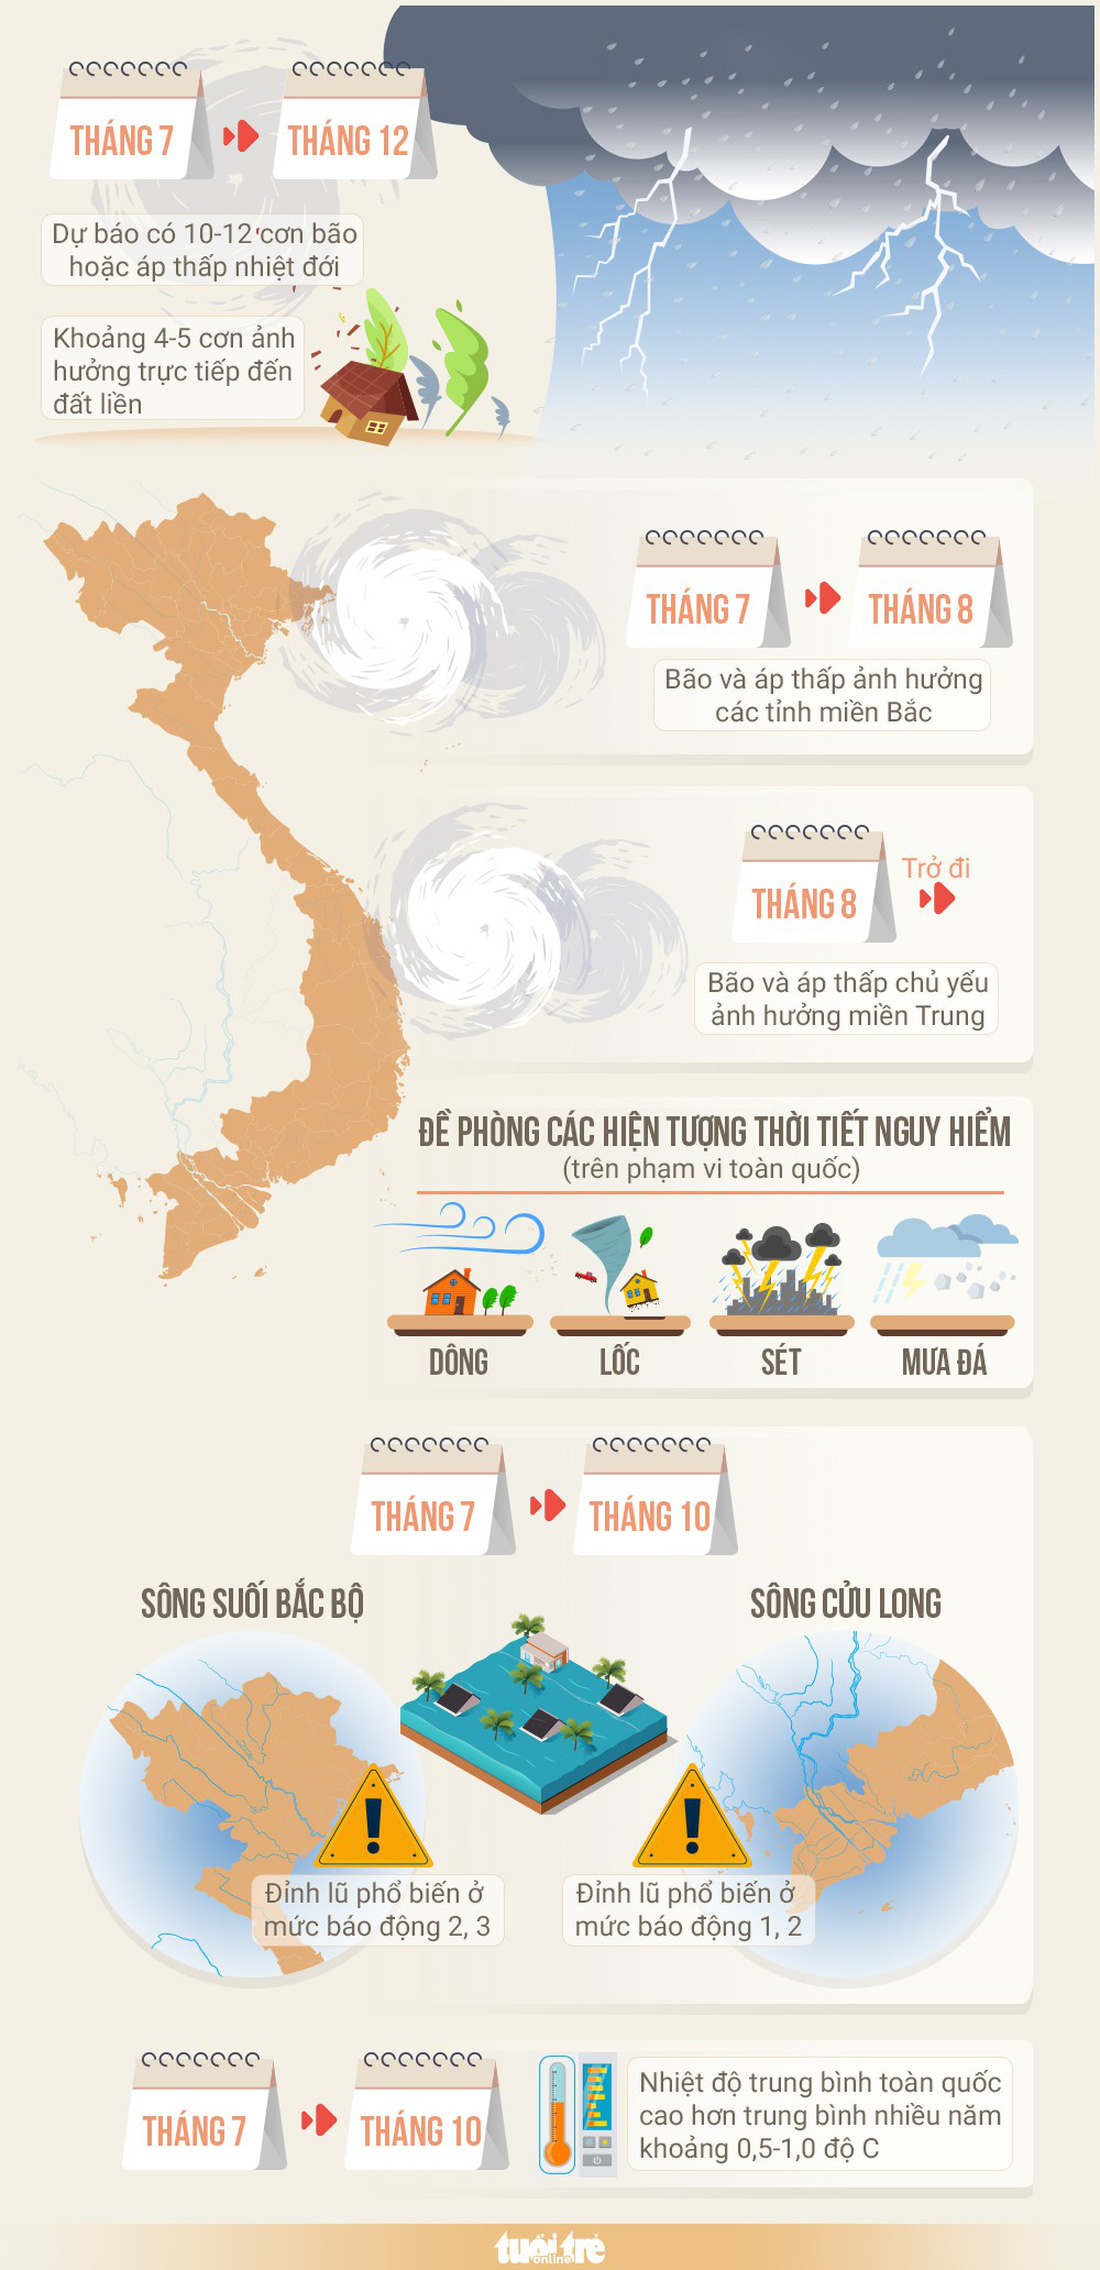 Năm nay, khoảng 4-5 cơn bão ảnh hưởng đến đất liền Việt Nam - Ảnh 1.